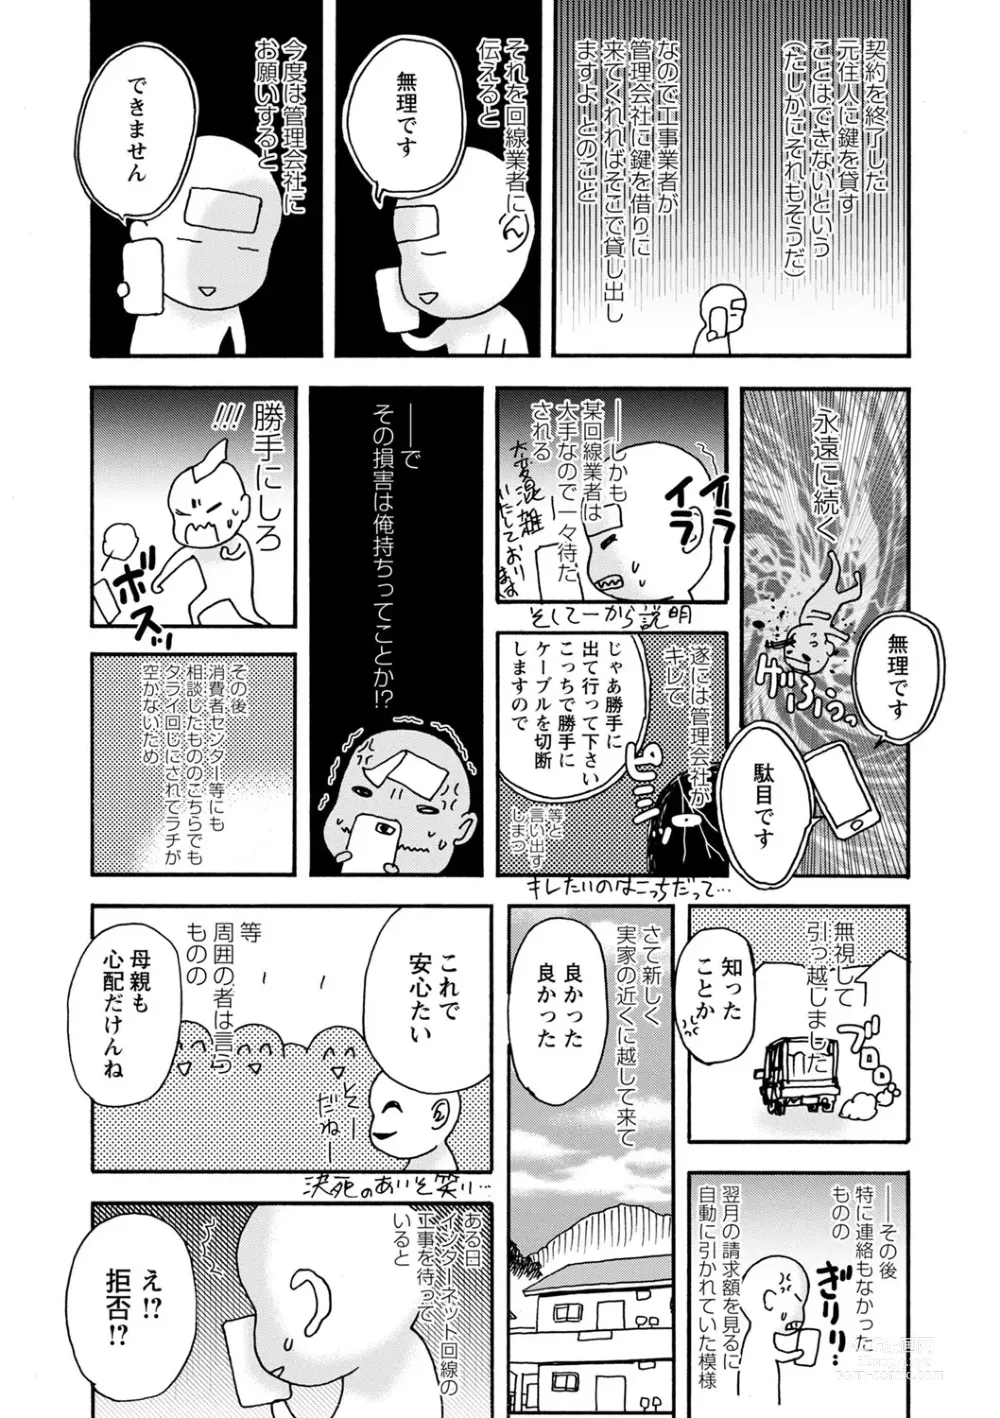 Page 222 of manga Tonari No Kage No Shoujo